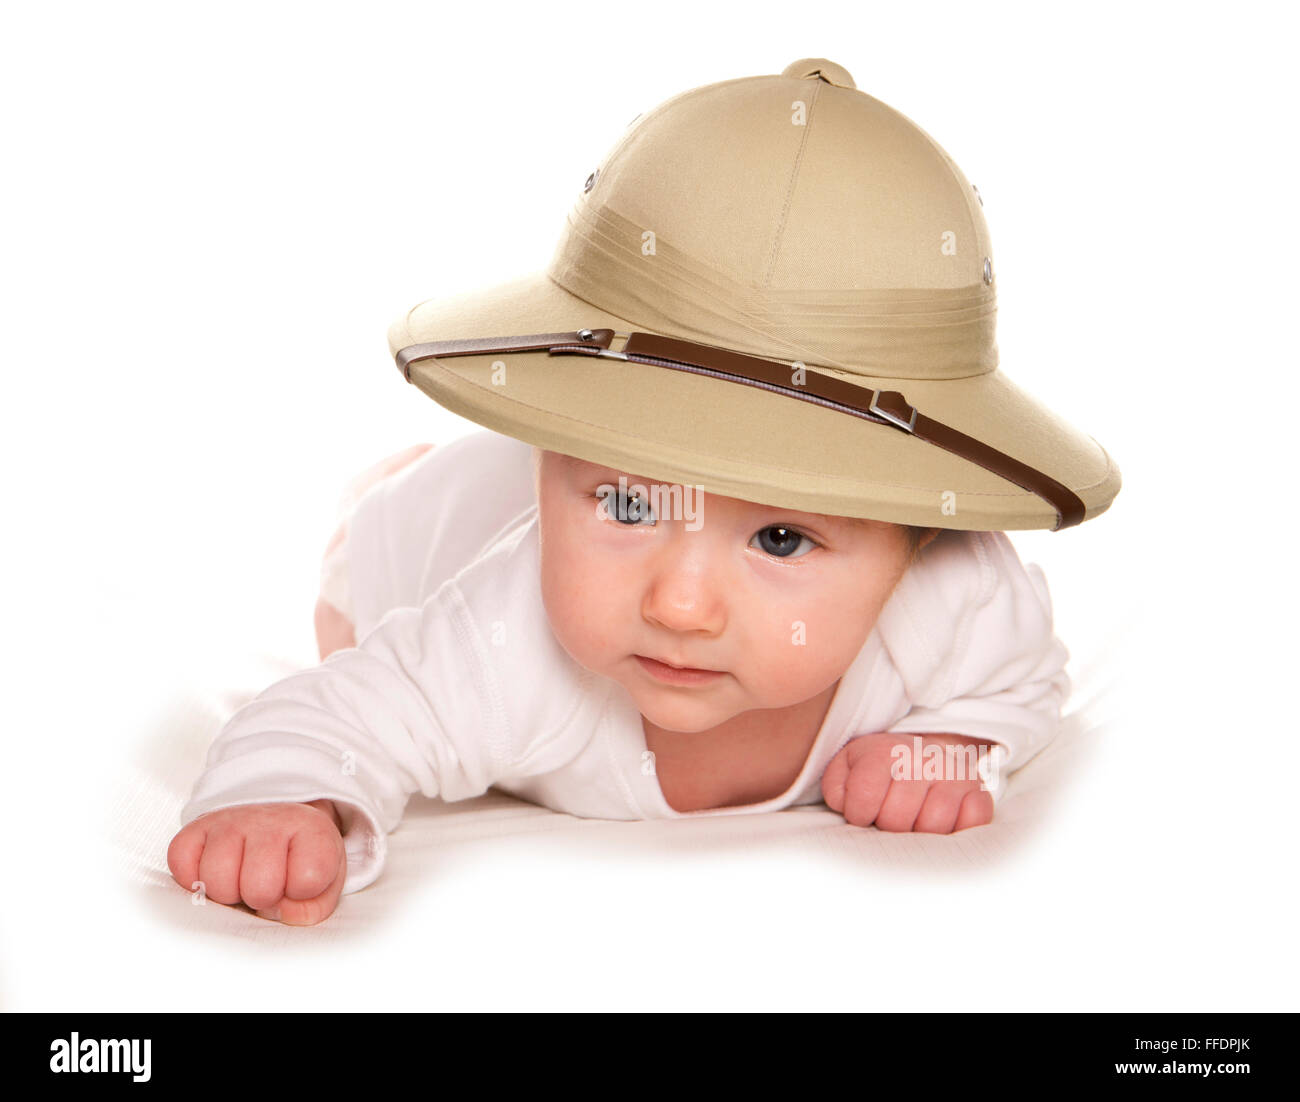 Bébé de trois mois wearing safari hat dentelle Banque D'Images